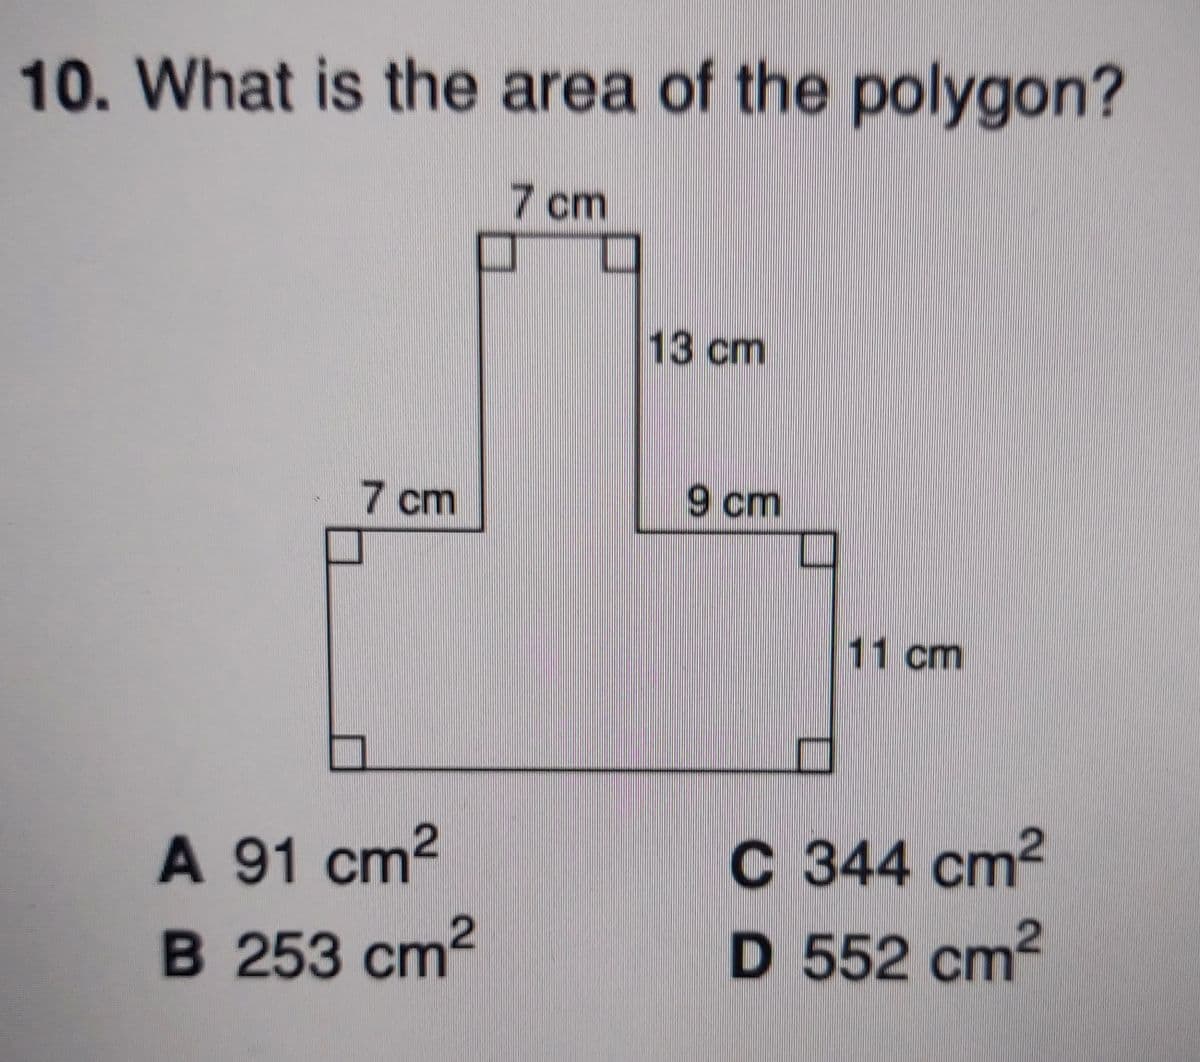 10. What is the area of the polygon?
7 cm
13 cm
7 cm
9 cm
11 cm
A 91 cm2
C 344 cm2
B 253 cm2
D 552 cm2
